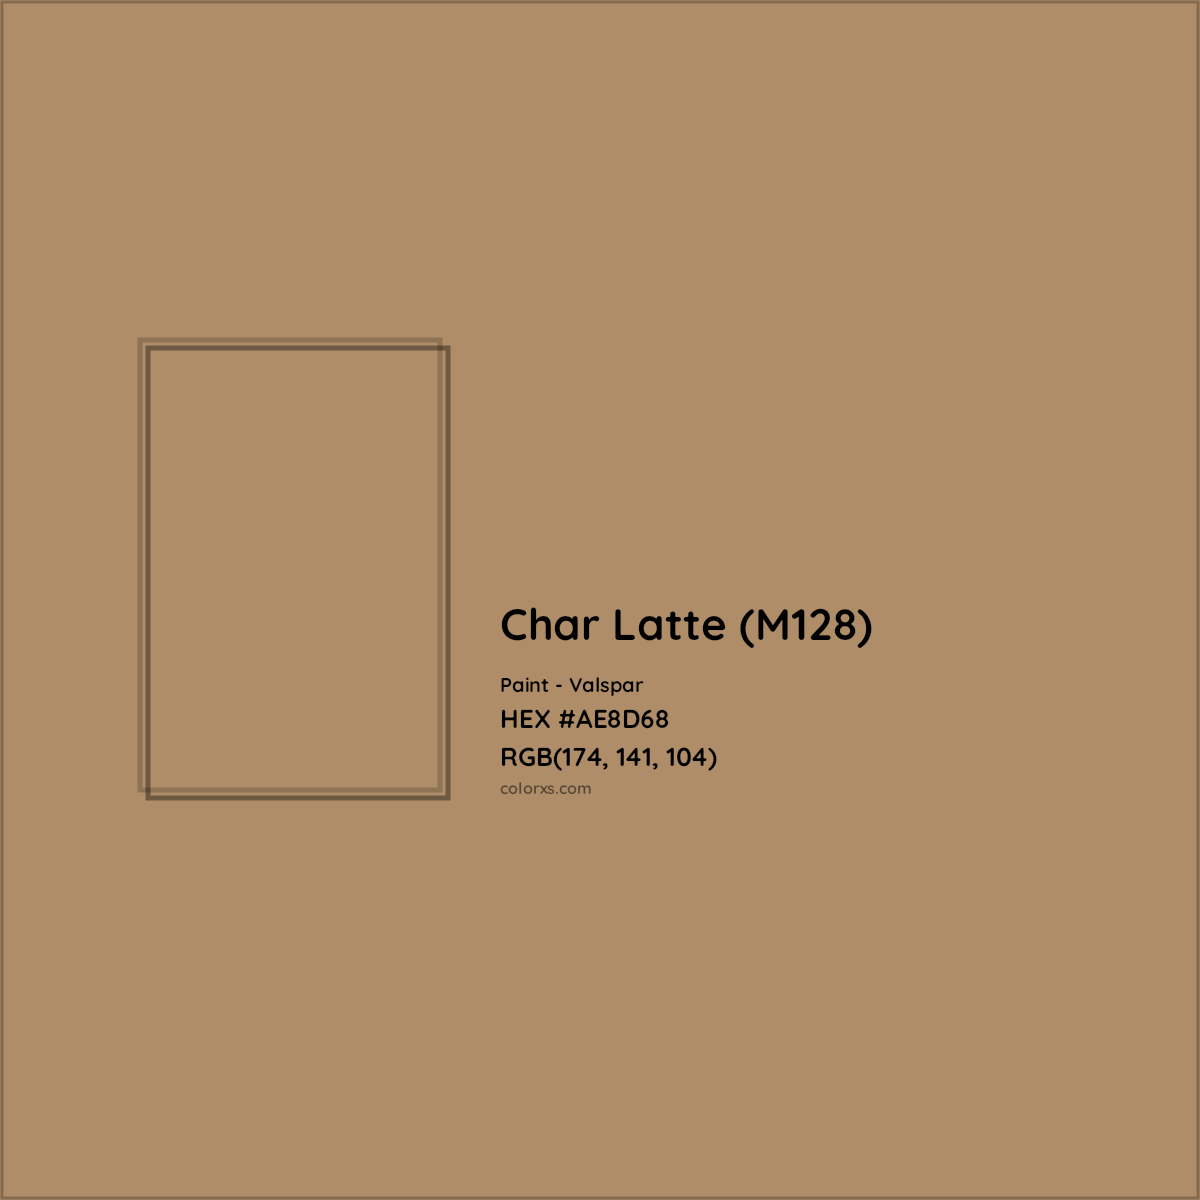 HEX #AE8D68 Char Latte (M128) Paint Valspar - Color Code